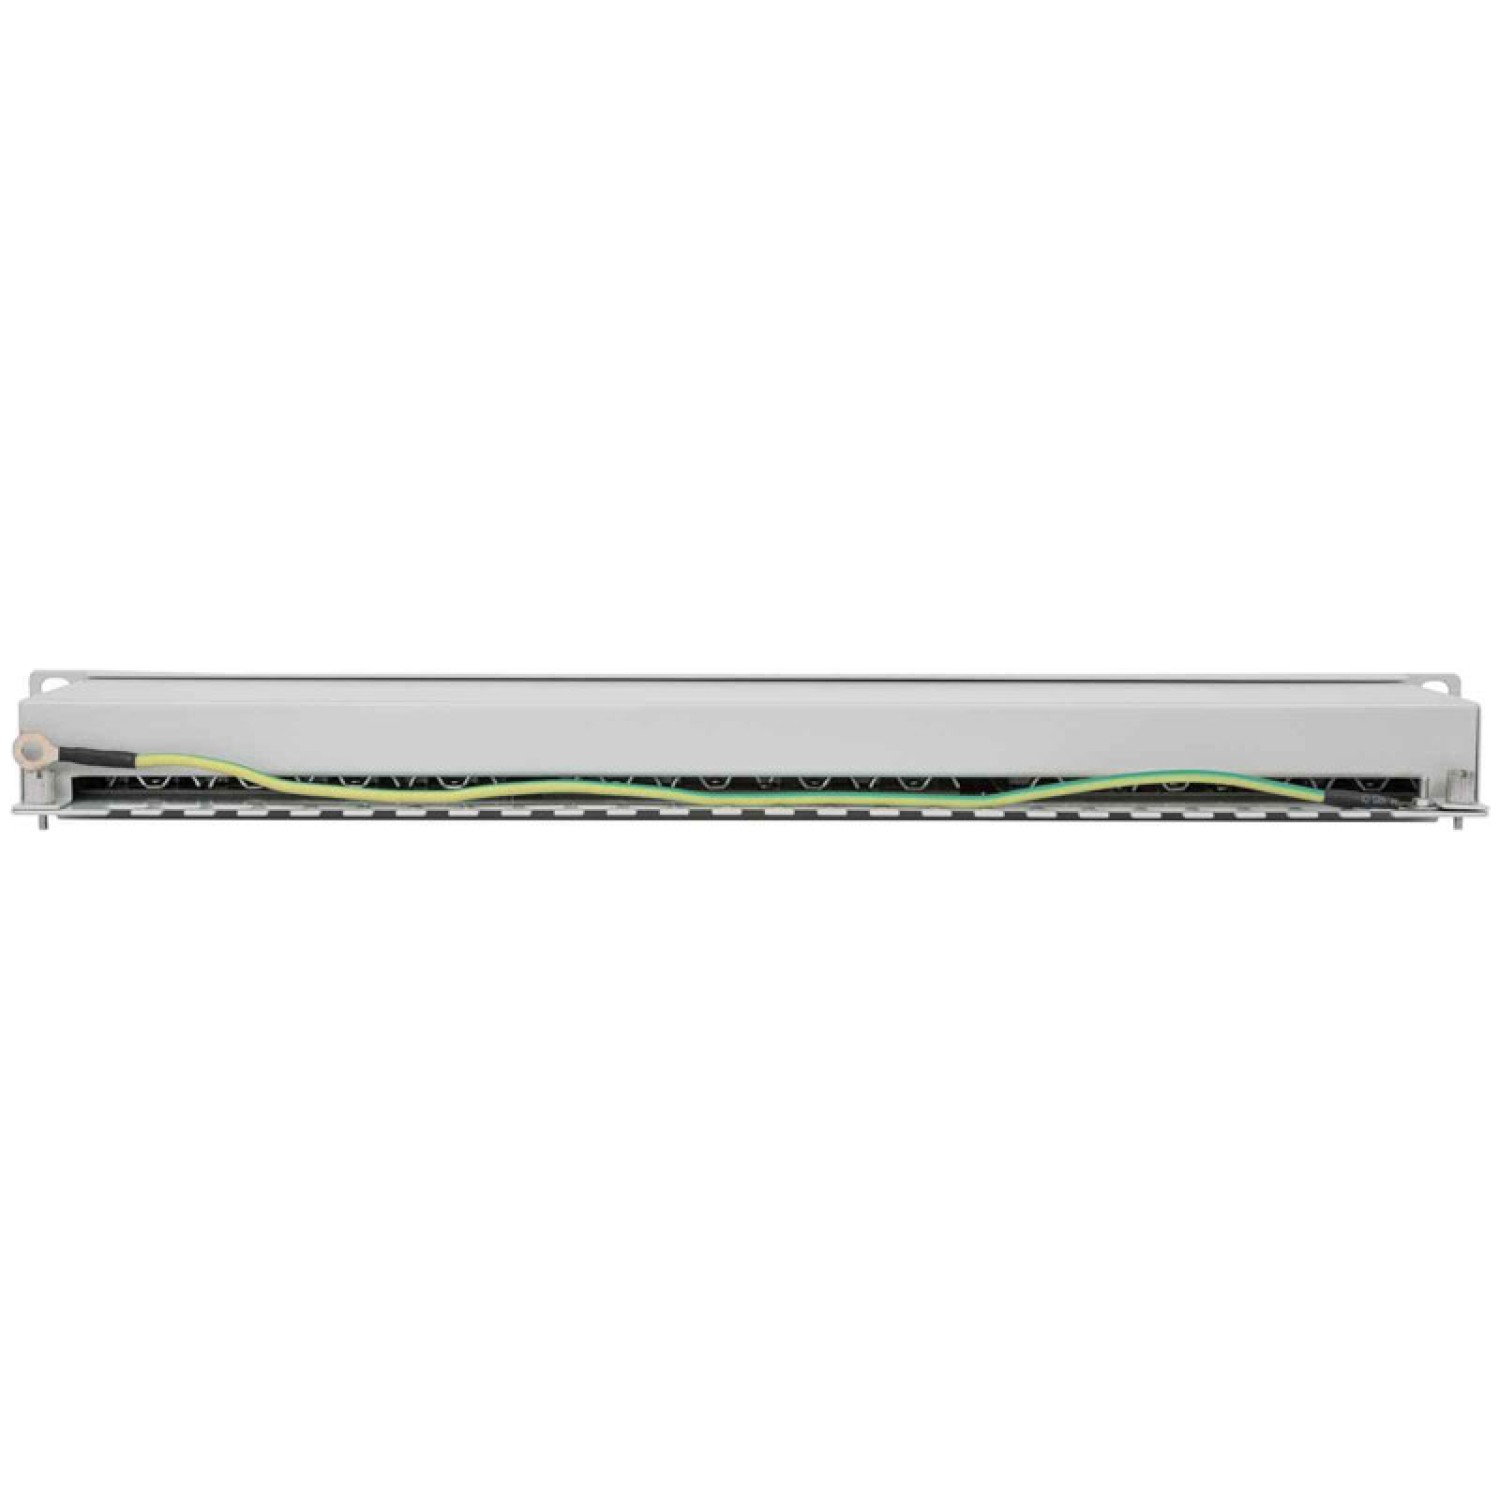 Fast Ethernet in Gigabit Ethernet povezava v omrežje preko 24x RJ45 portov  - Balix gaming trgovina za videoigre in računalniško opremo